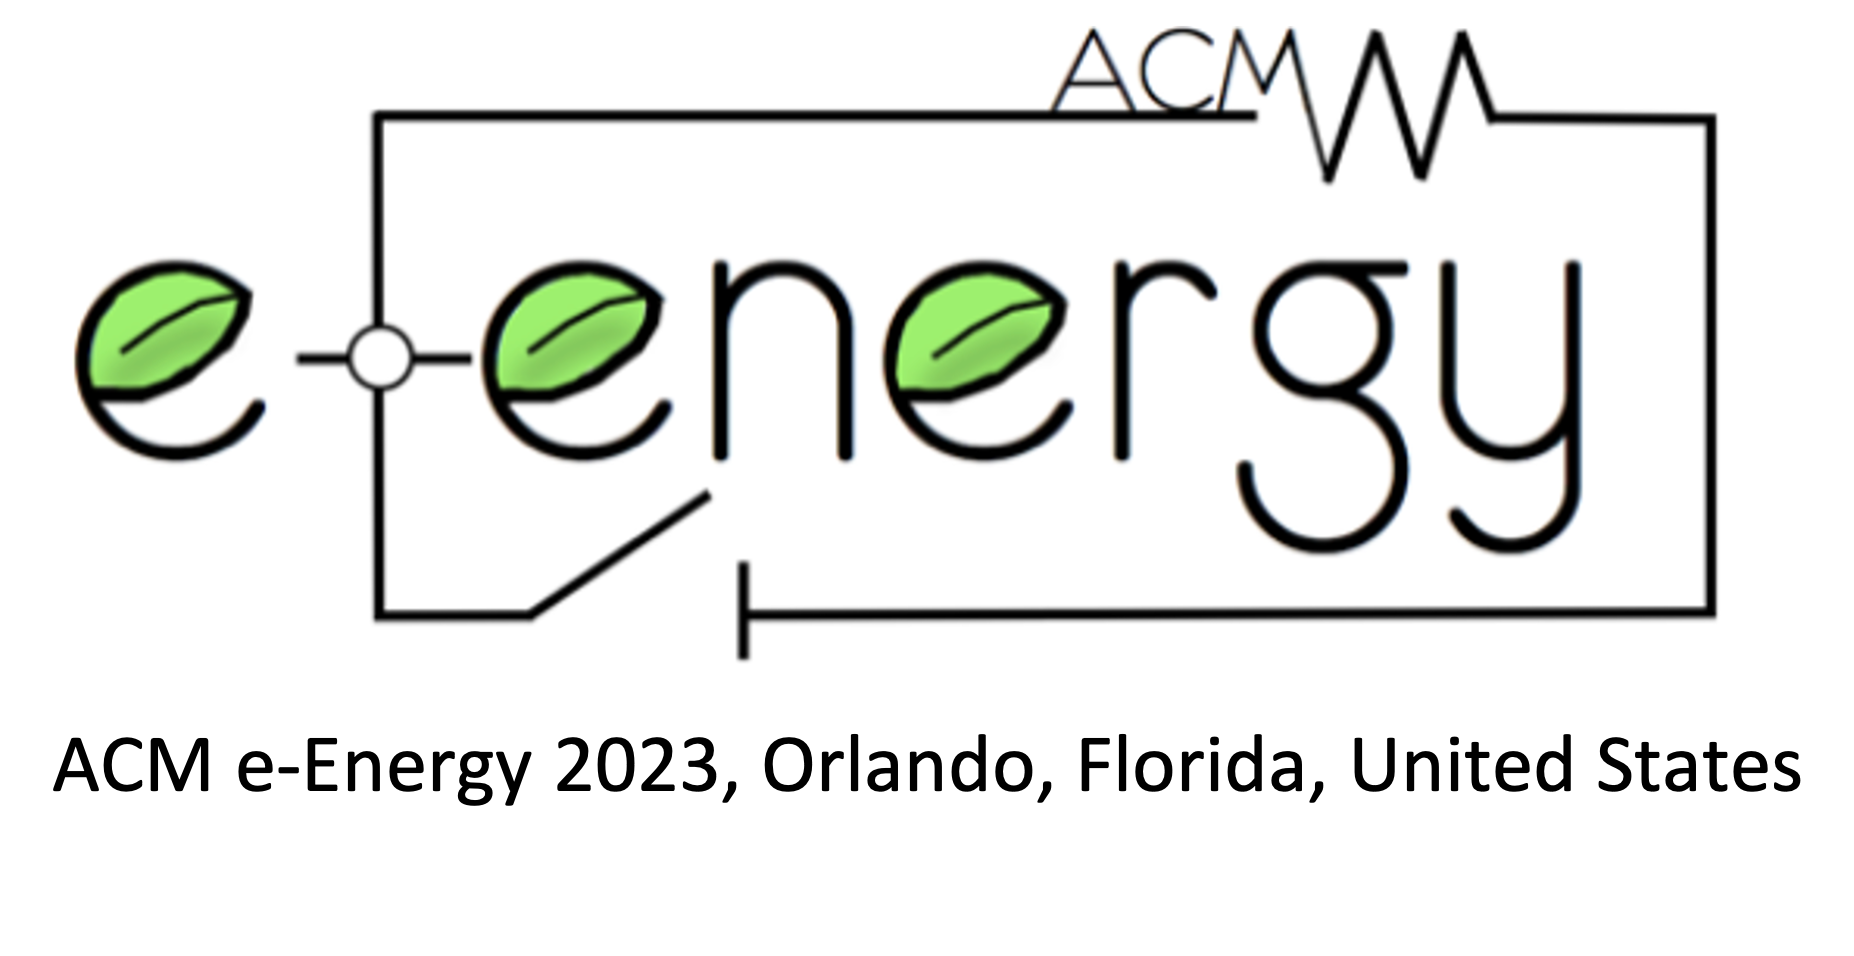 ACM e-Energy 2023, June 16-June 23, 2023, Orlando, Florida